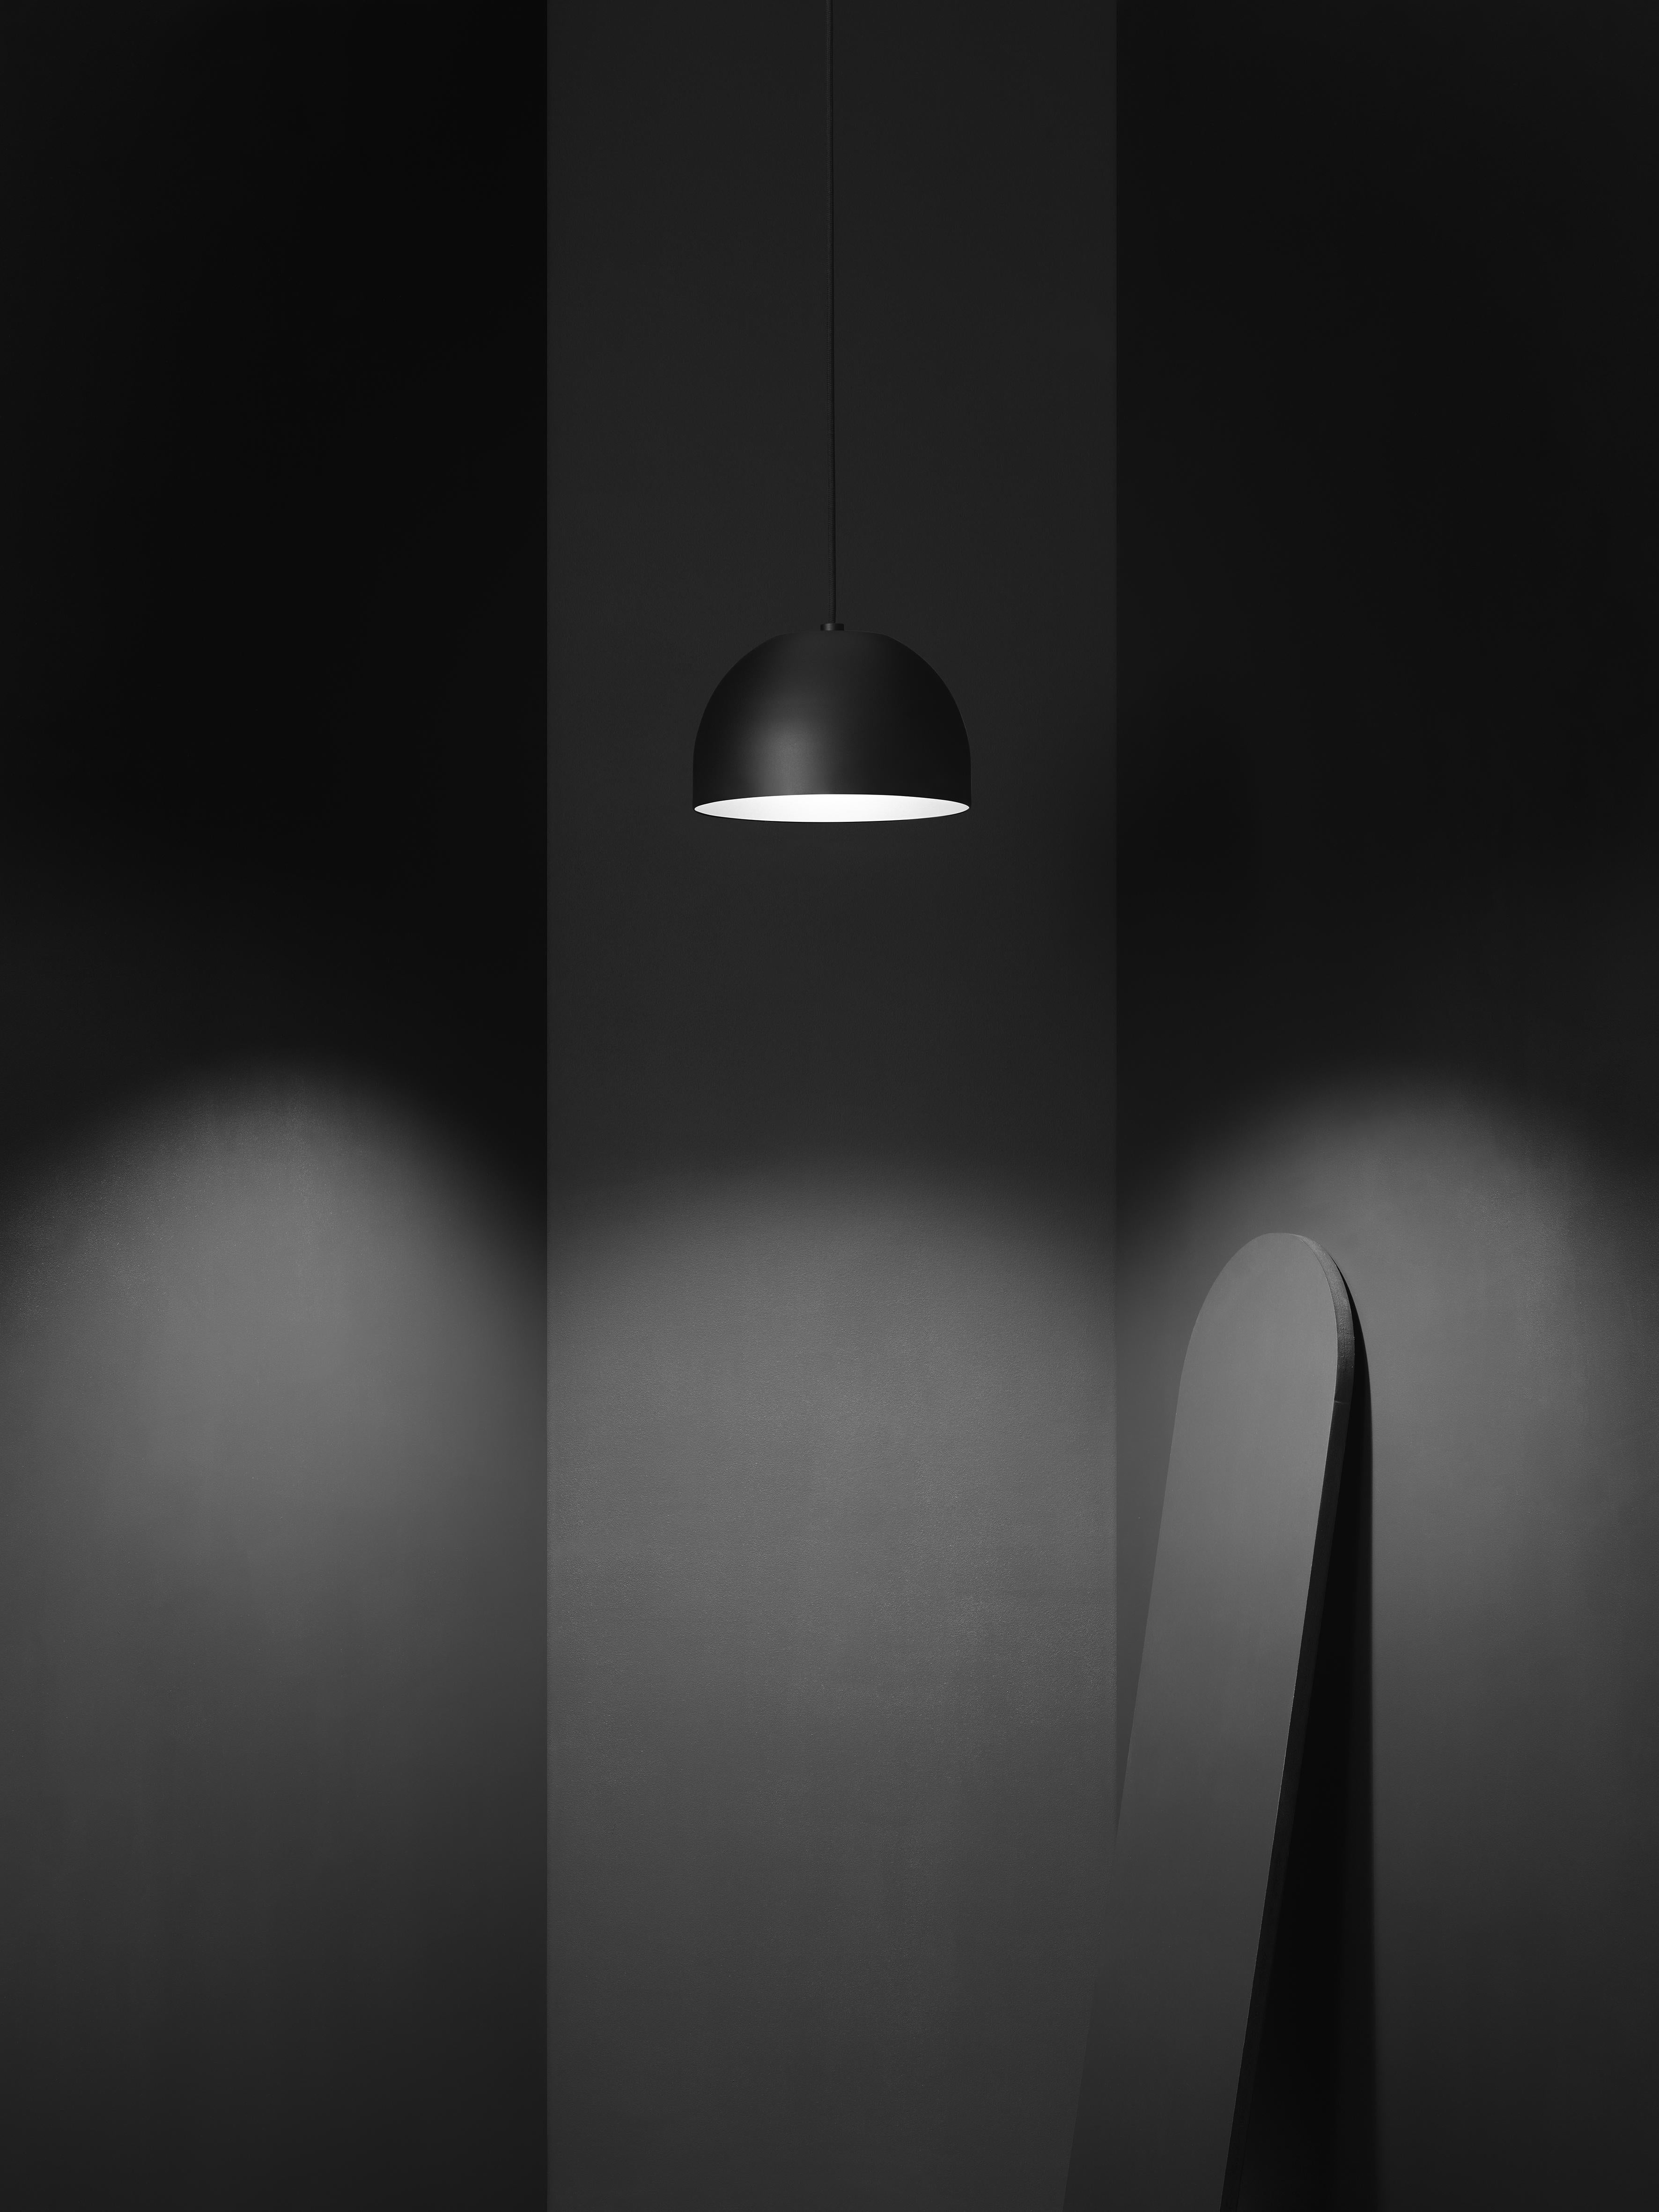 Zero Lighting a donné naissance au pendentif Bob en collaboration avec Bernstrand & Borselius, un cabinet de design réputé pour ses luminaires intéressants pour les intérieurs modernes. Ce pendentif illustre l'habileté de Zero à créer un art de